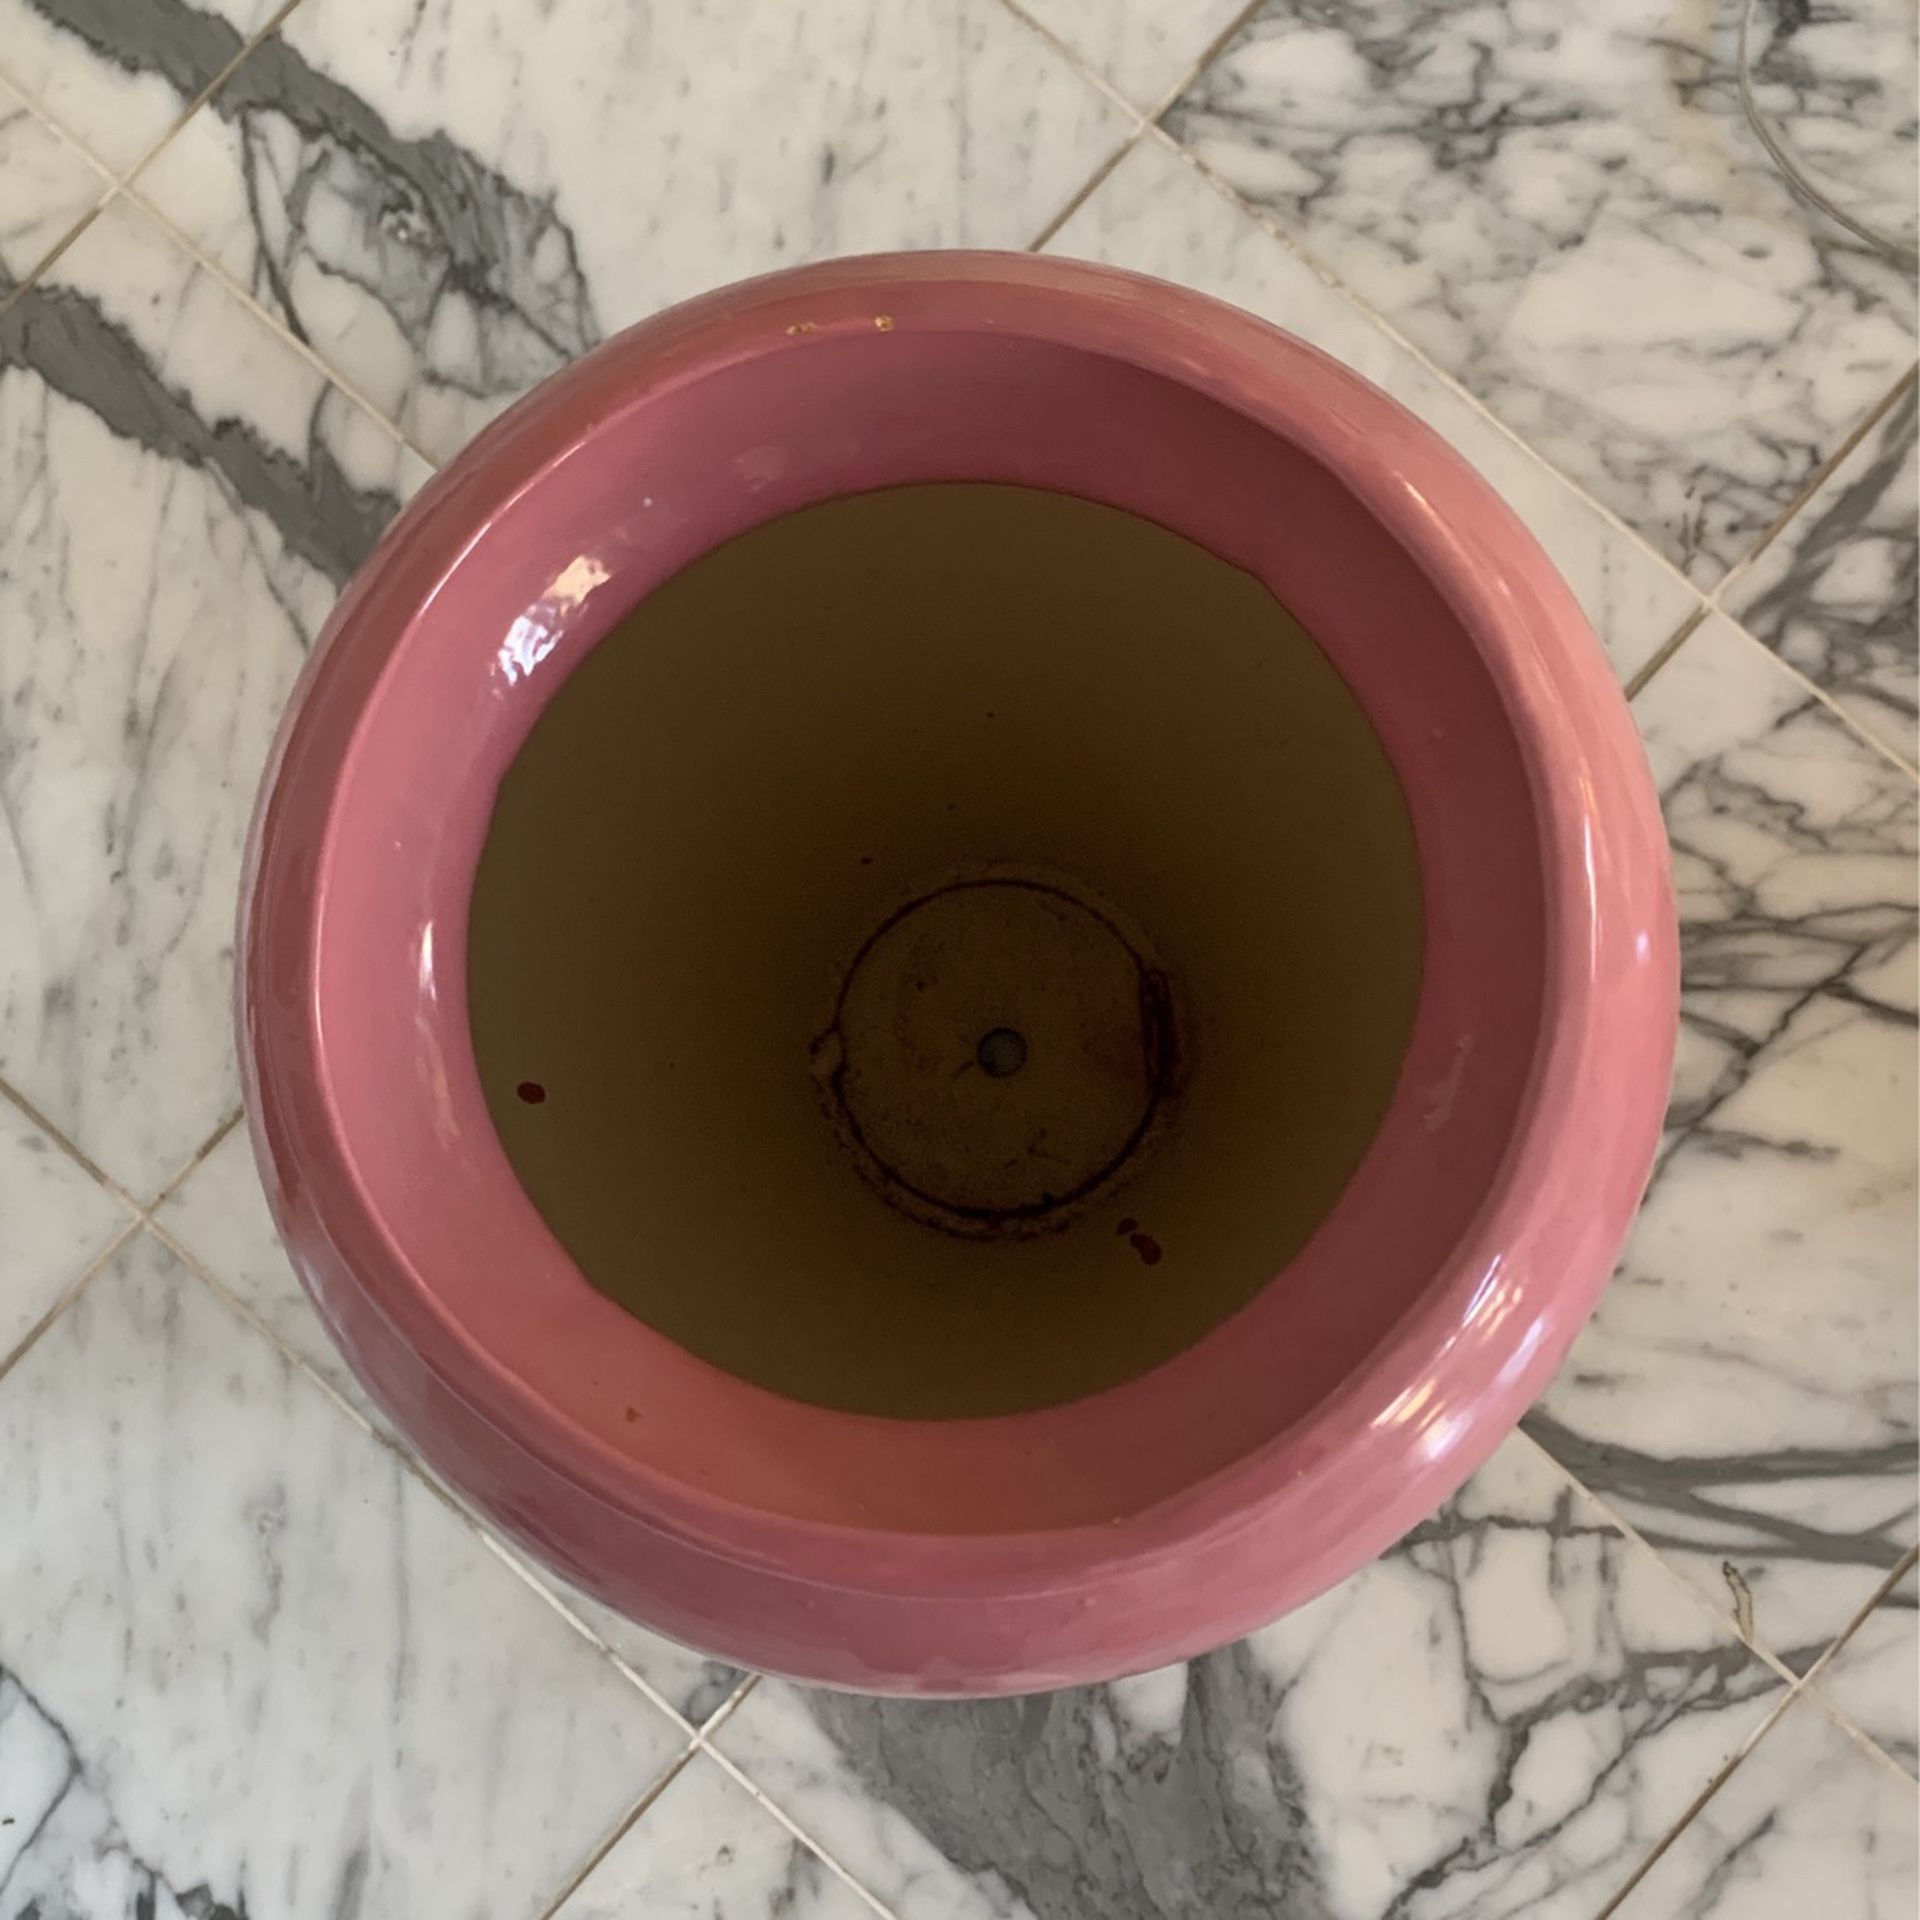 Tall Pink Flower Vase/Pot Urn Shaped